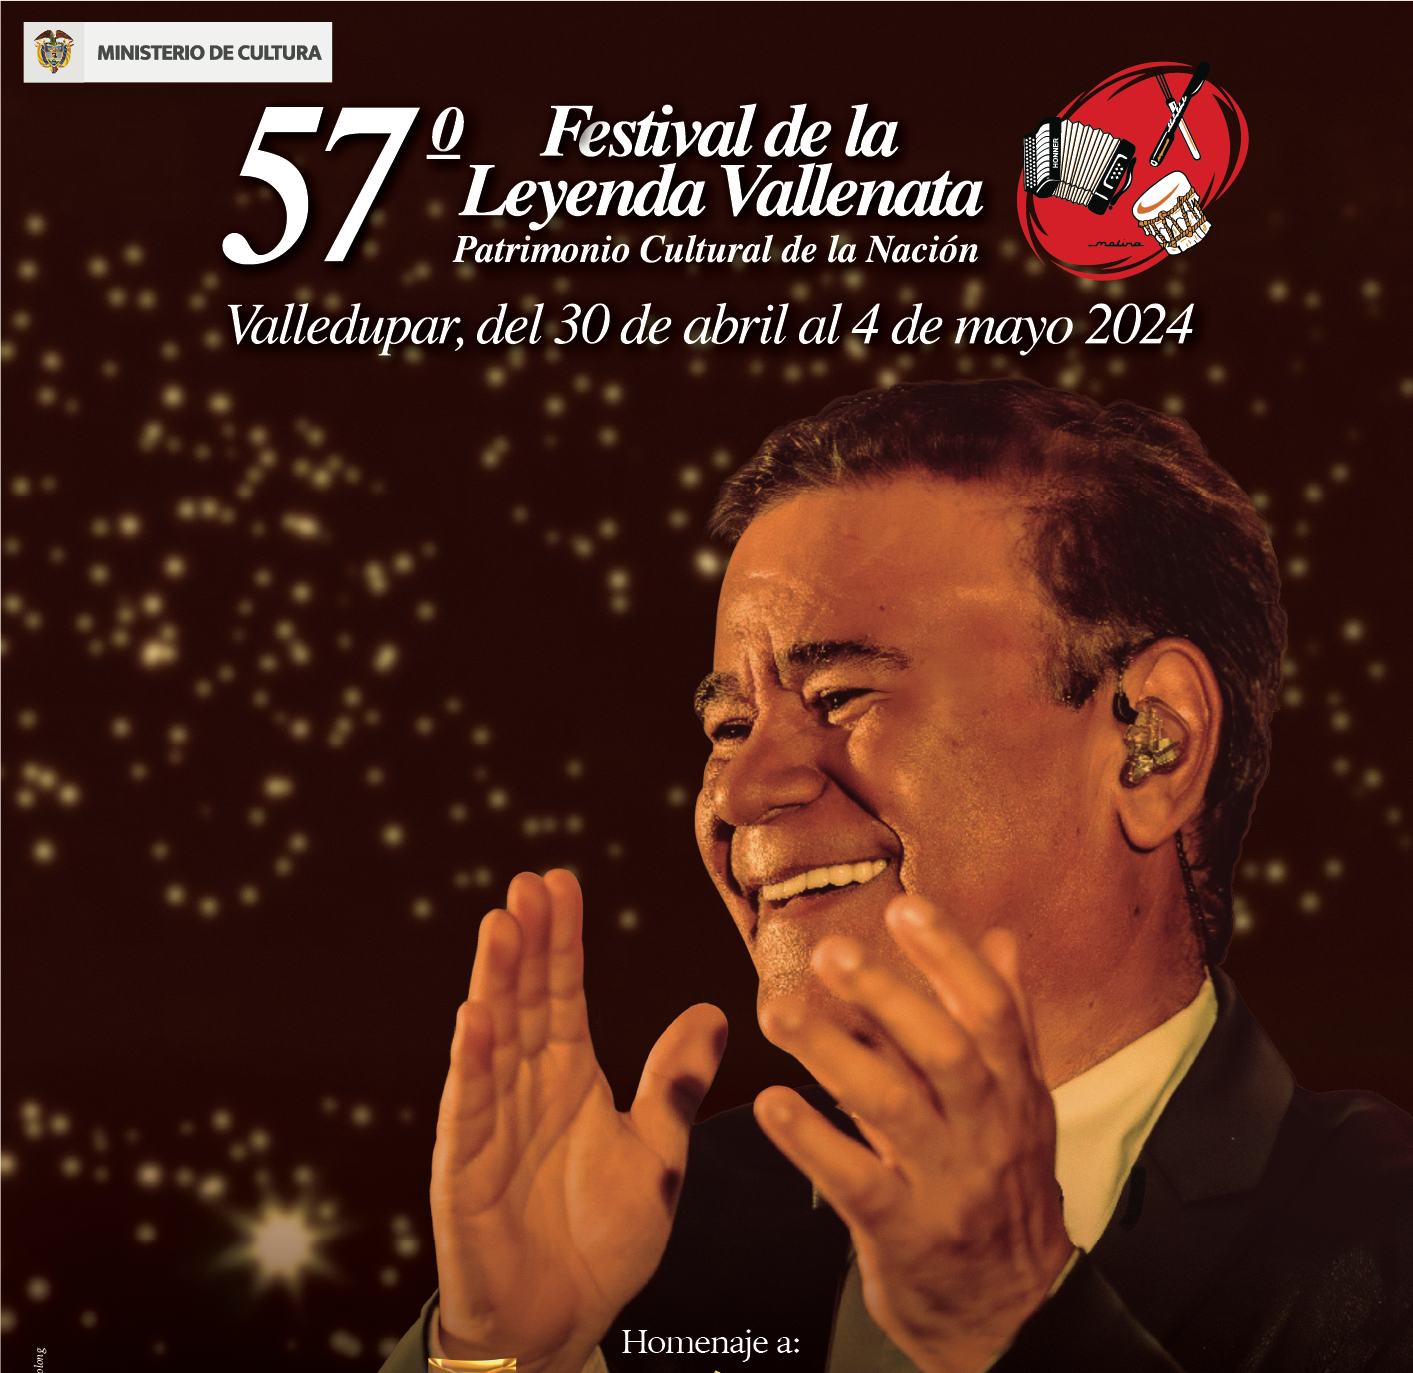 Juan Luis Guerra y Silvestre Dangond, completan el cartel de lujo del 57° Festival de la Leyenda Vallenata